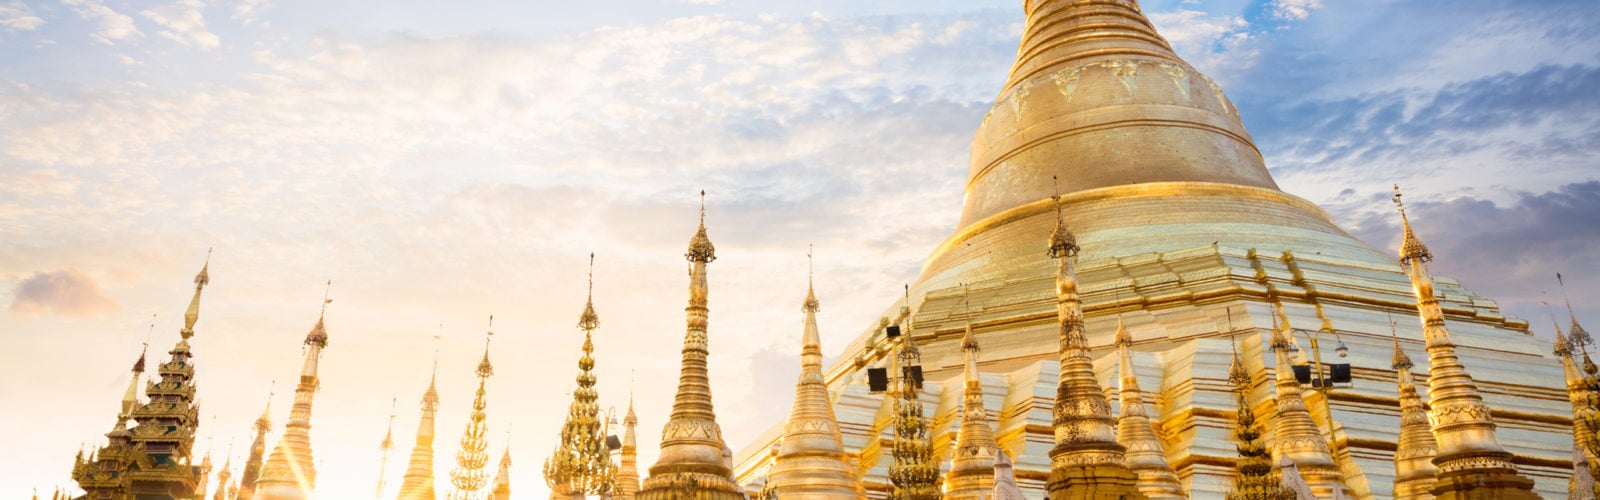 shwedagon-pagoda-yangon